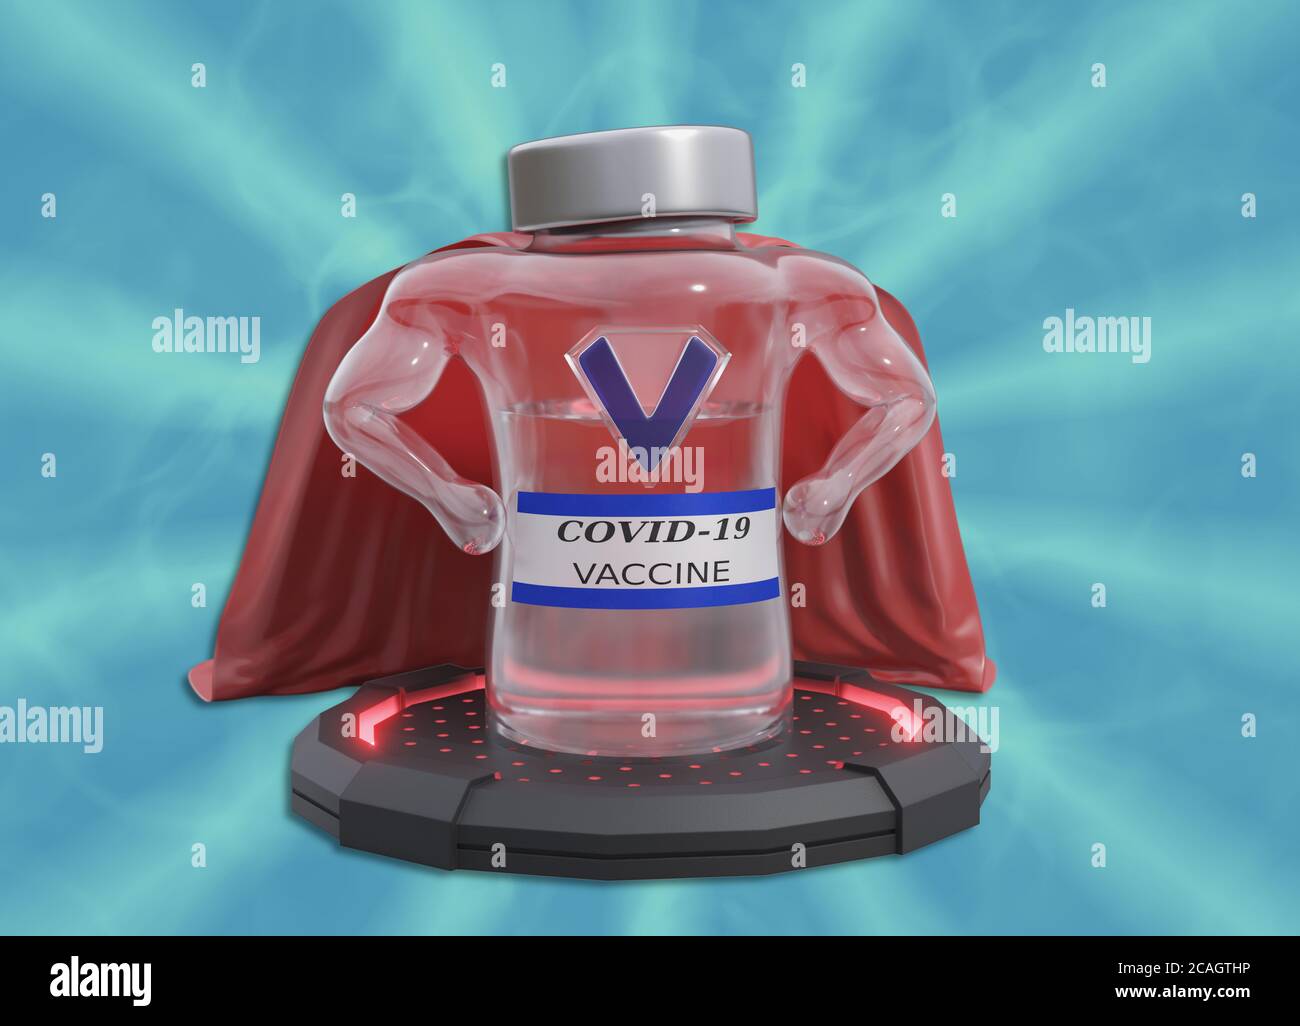 COVID-19 Superhero-Impfstoff. Eine künstlerische Darstellung, die Hoffnungen auf das schnelle Auftreten eines Impfstoffs zur Bekämpfung des Coronavirus zum Ausdruck bringt. Stockfoto